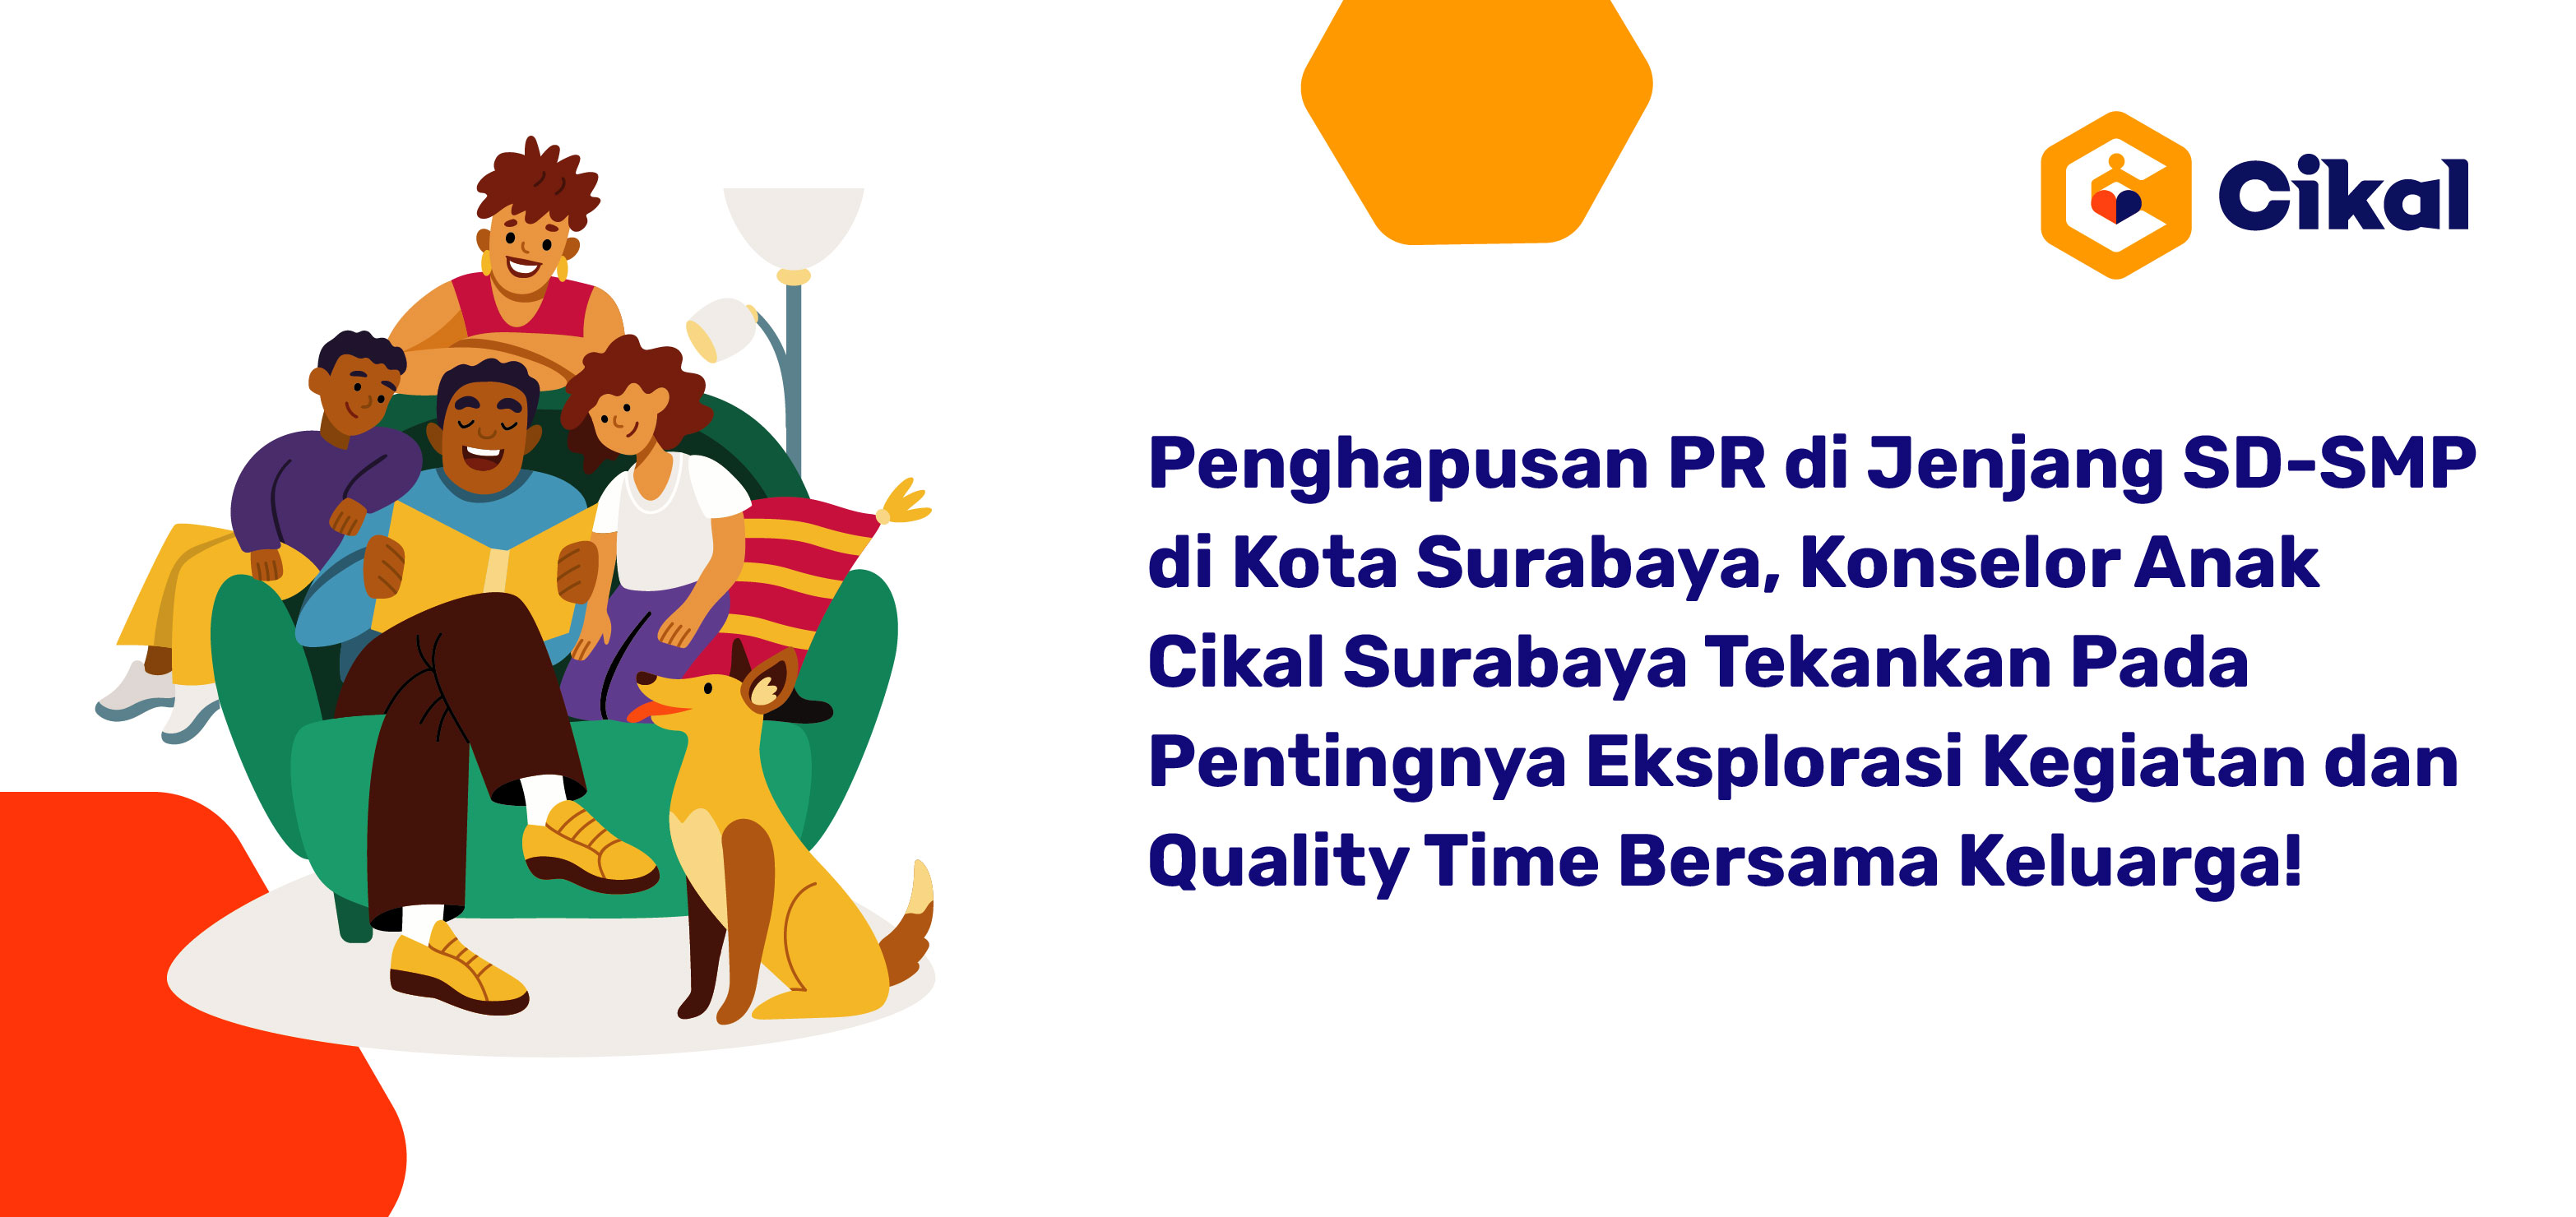 Penghapusan PR di Jenjang SD-SMP di Kota Surabaya, Konselor Cikal Surabaya Tekankan Pada Pentingnya Eksplorasi Kegiatan dan Quality Time Bersama Keluarga!